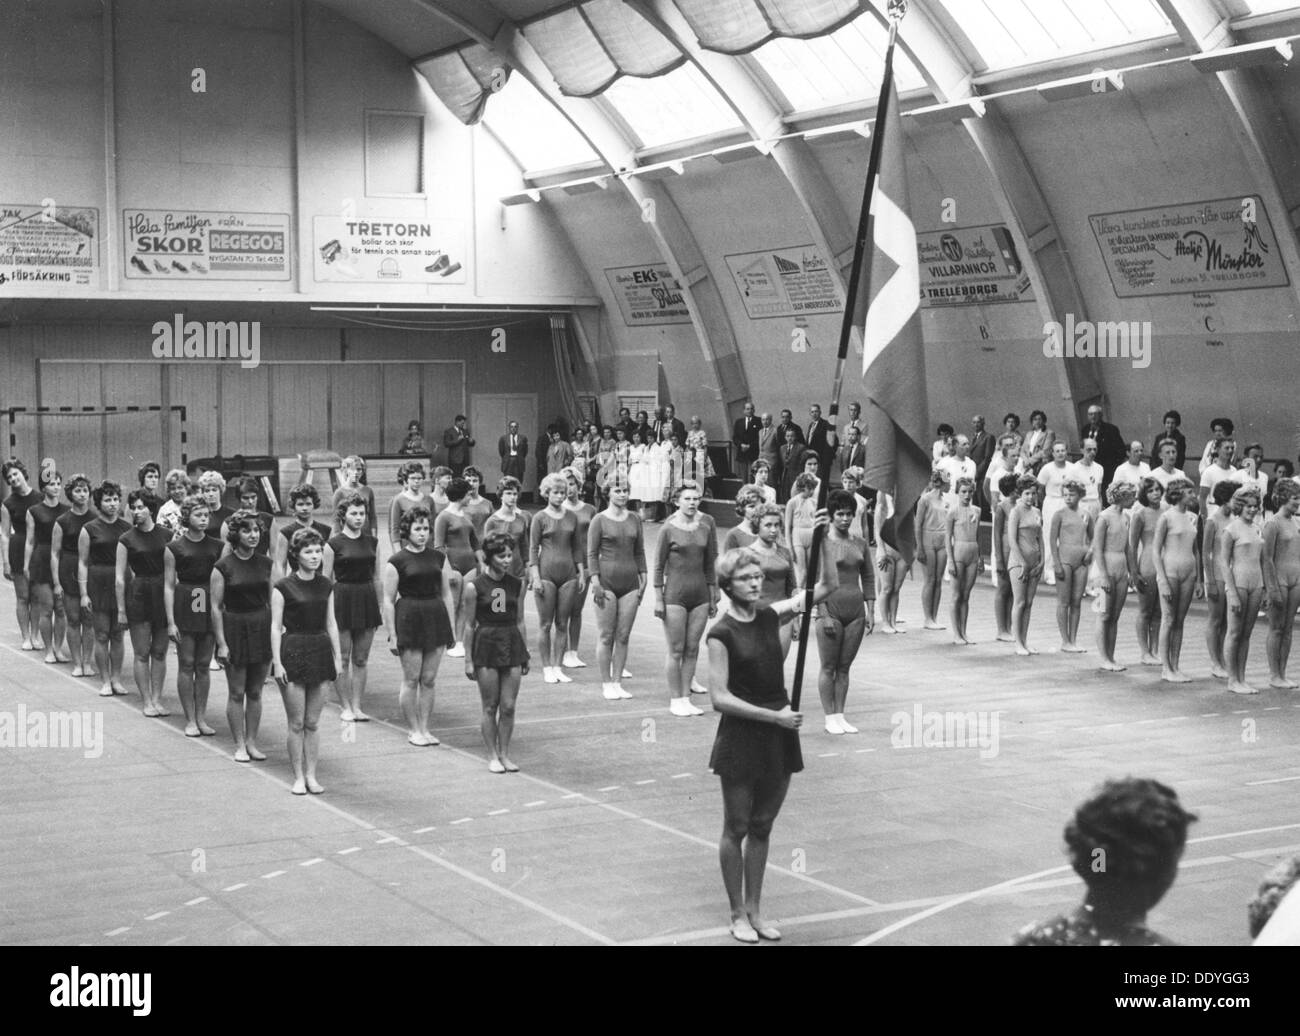 Female gymnasts Parade in einem Gymnasium, Schwedischen Nationalen Tag, Trelleborg, Schweden, 1969. Artist: Unbekannt Stockfoto